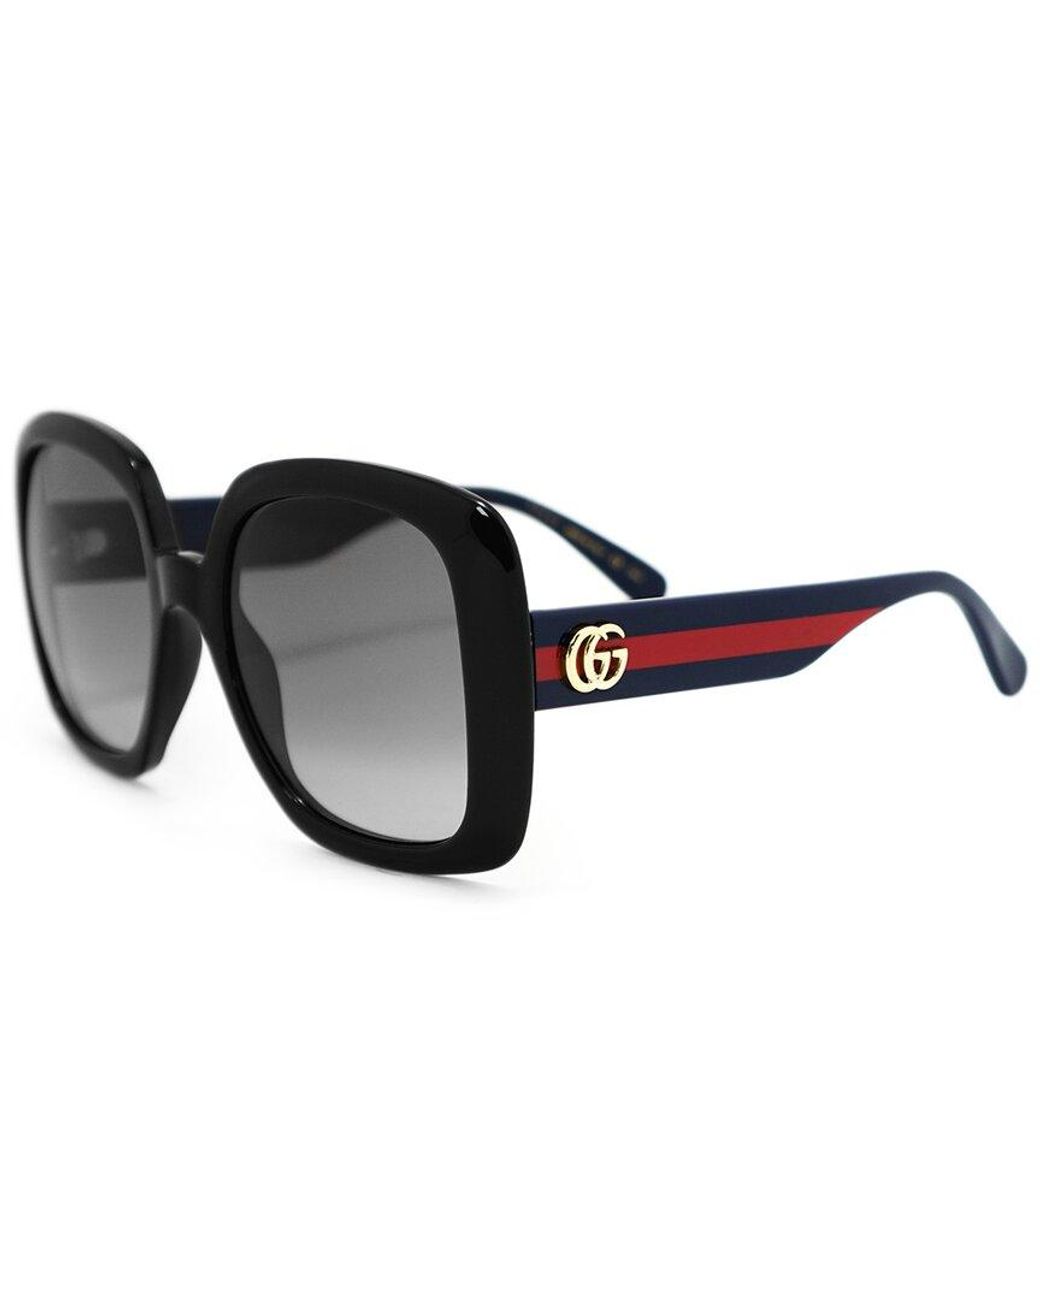 Gucci GG0713S 55mm Sunglasses in Black | Lyst